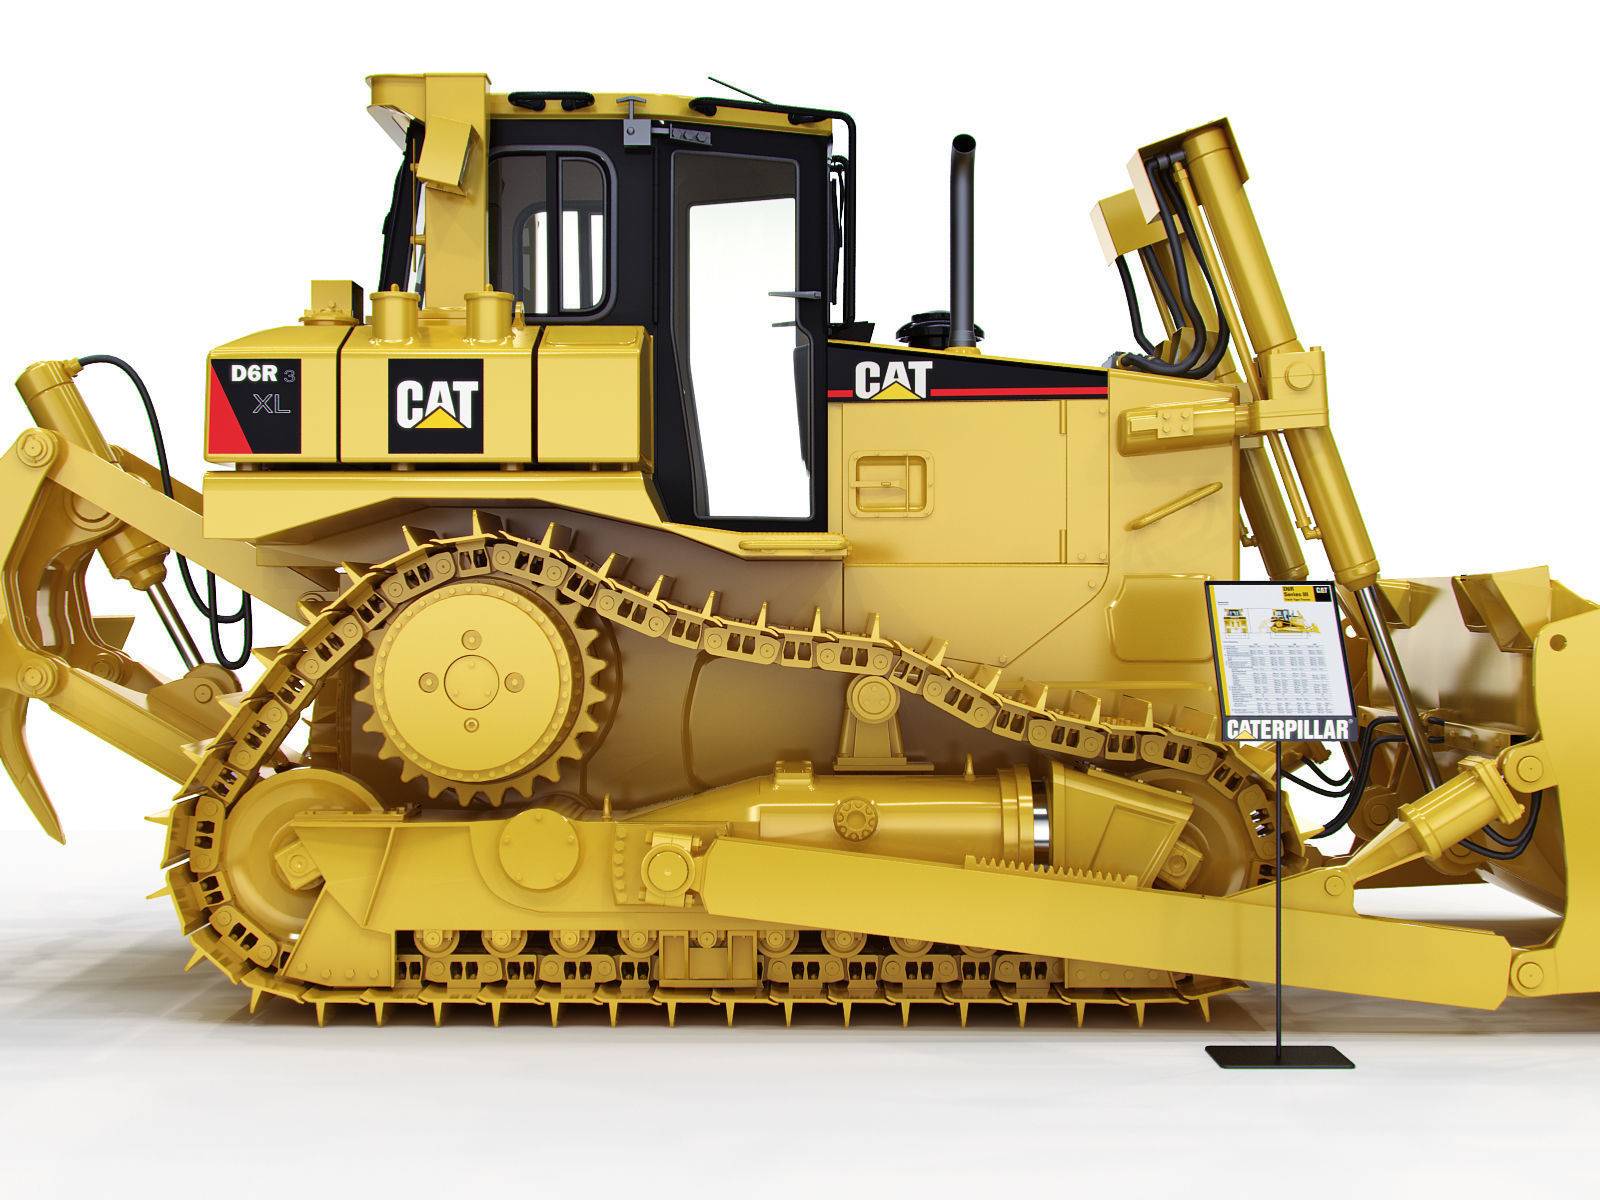 ТОП-7 бульдозеров CAT (Caterpillar) по техническим характеристикам